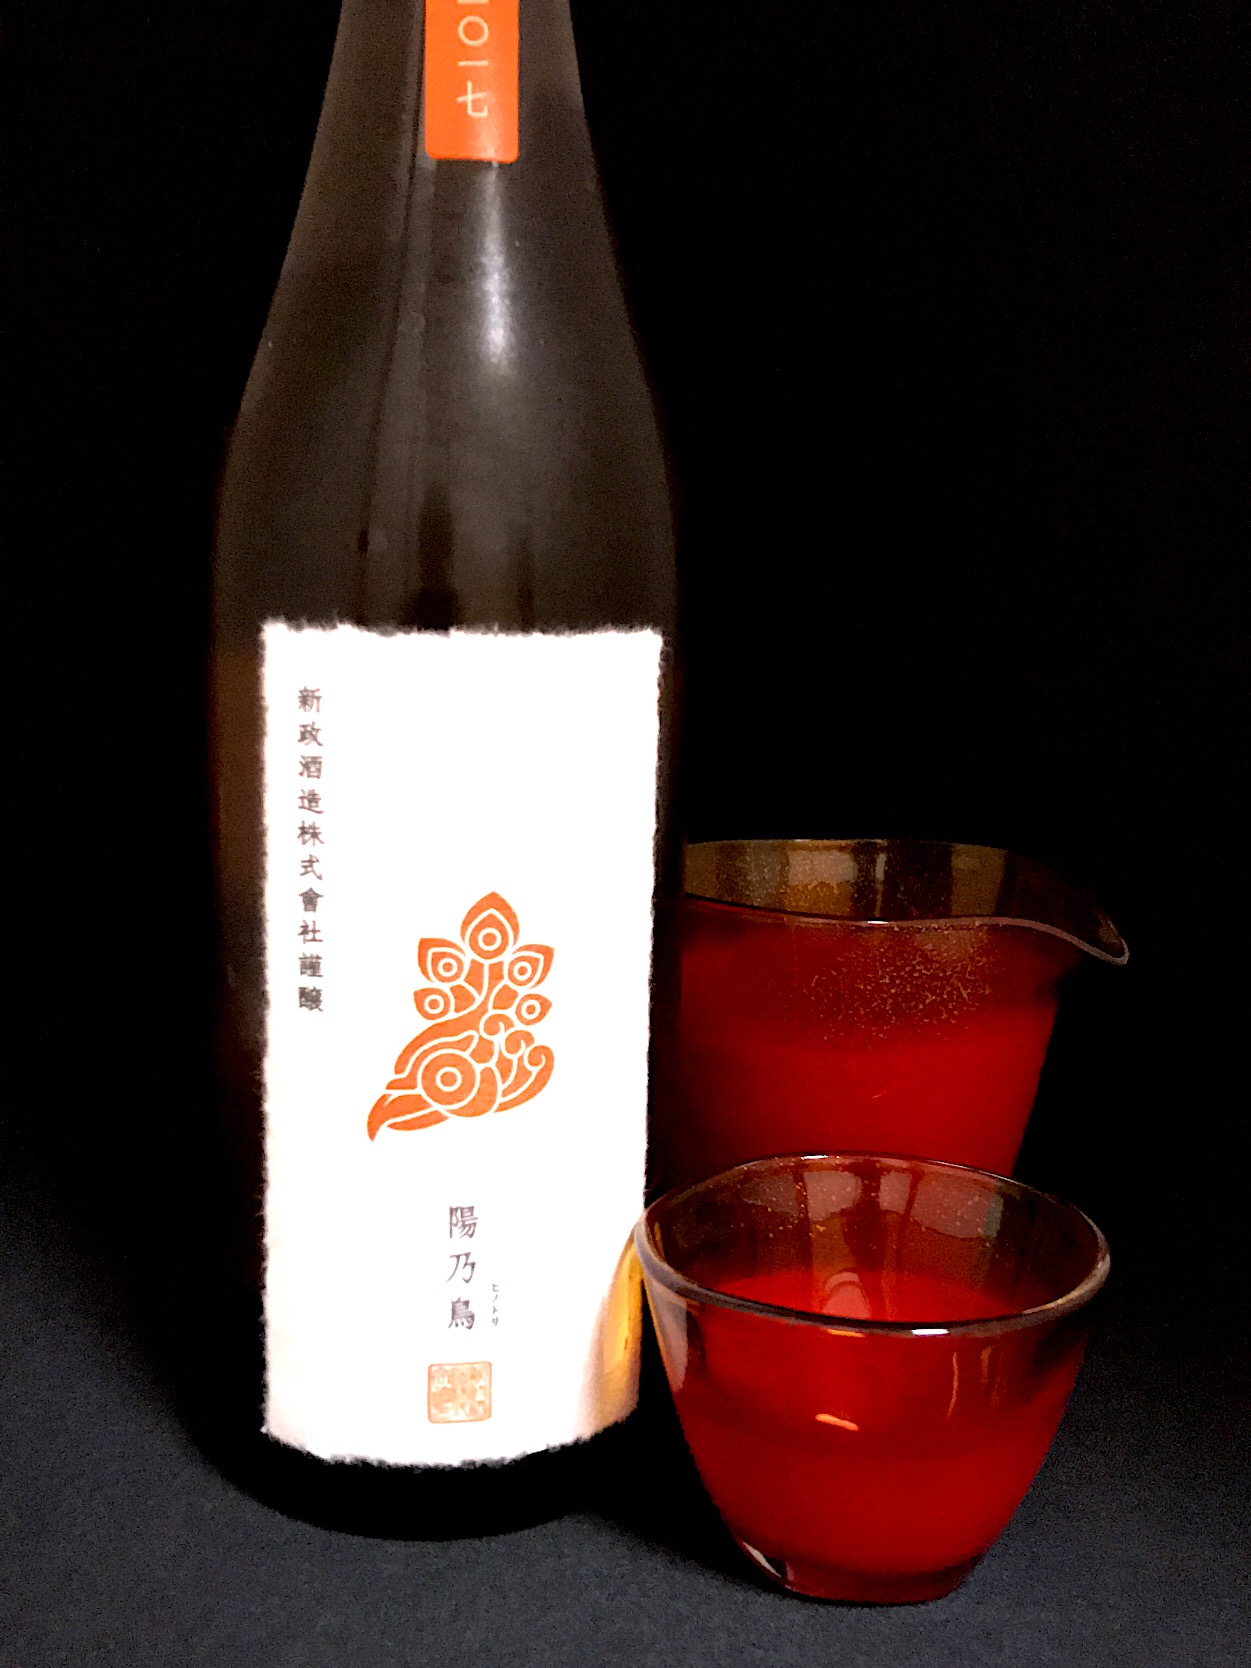 新政 陽乃鳥 貴醸酒 PRIVATE LAB柑橘系フルーツの香りと甘さが心地よく美味しい 日本酒 新政 陽の鳥 秋田貴譲酒 美味しい 甘い